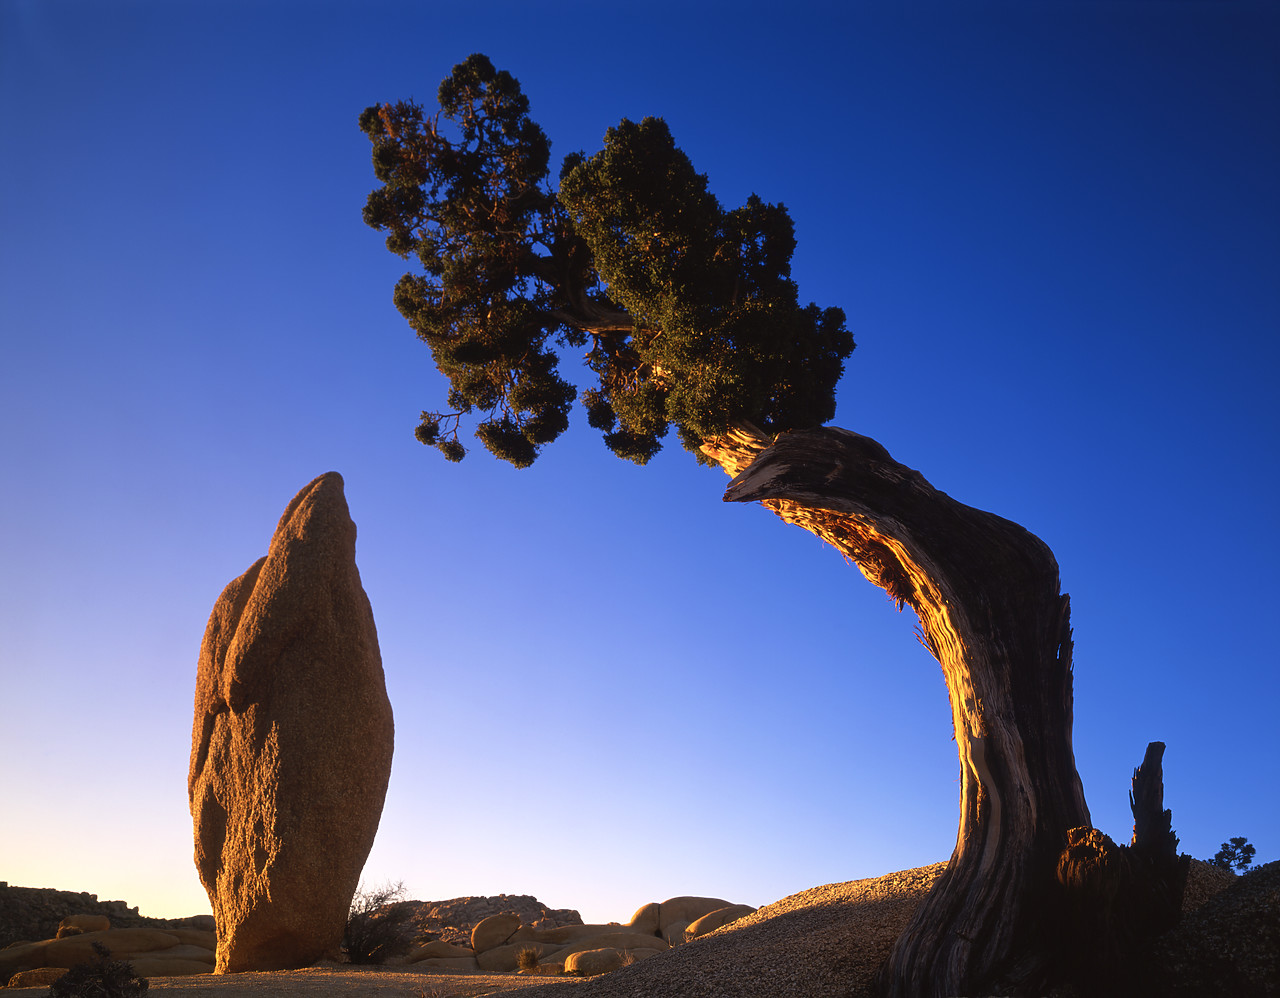 #040015-1 - Juniper Tree framing Boulder, Joshua Tree National Park, California, USA